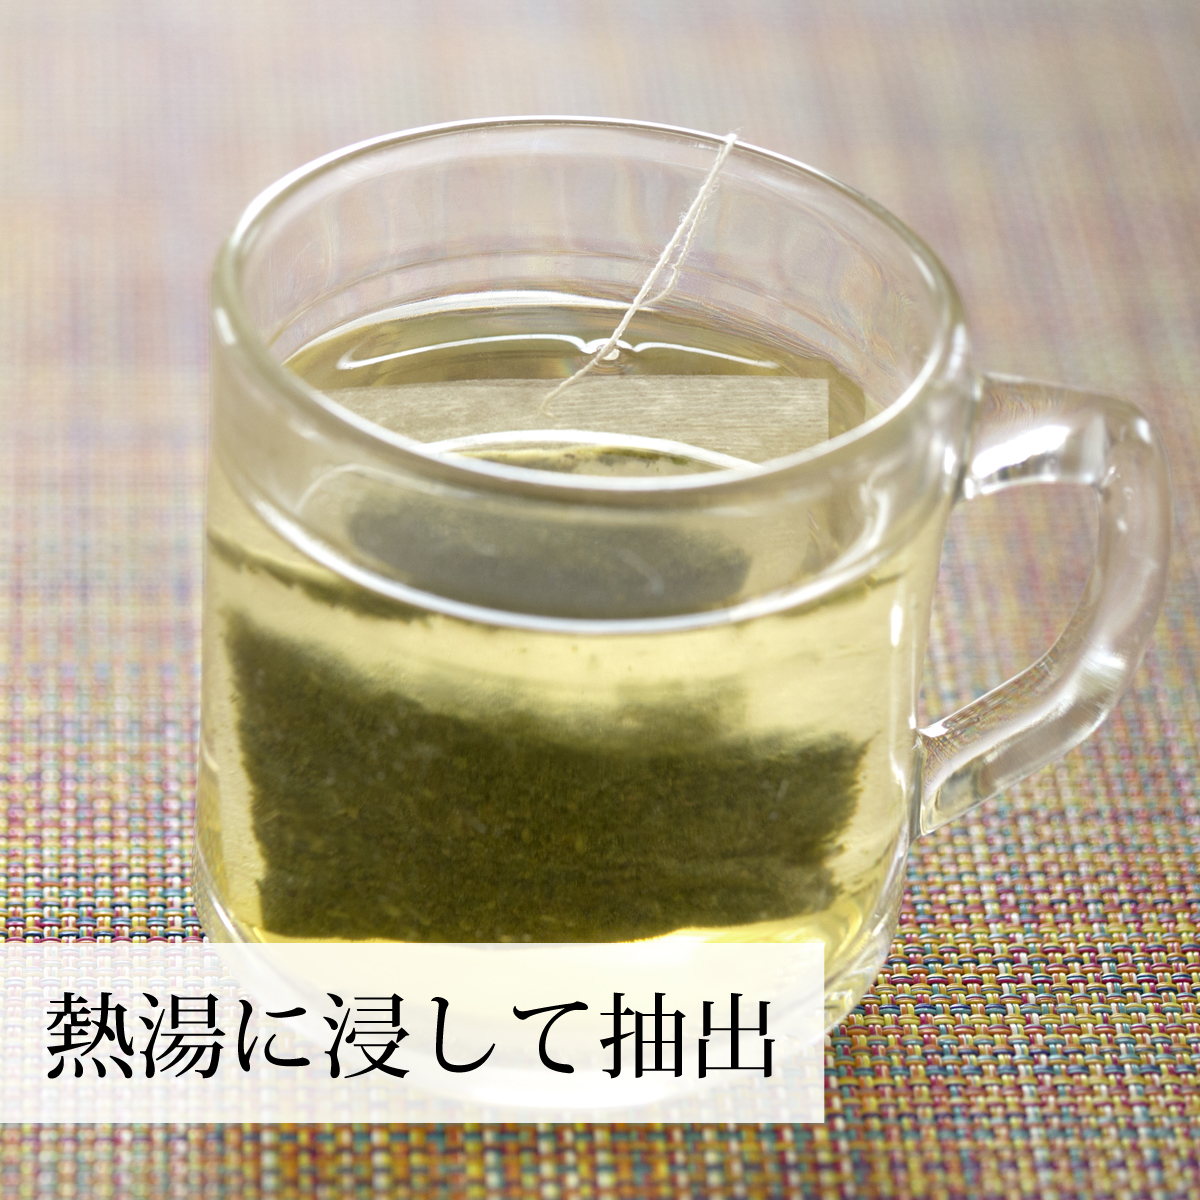 ギャバロン茶 100パック×4個 ギャバ茶 無添加 100% ギャバ サプリ 緑茶、日本茶